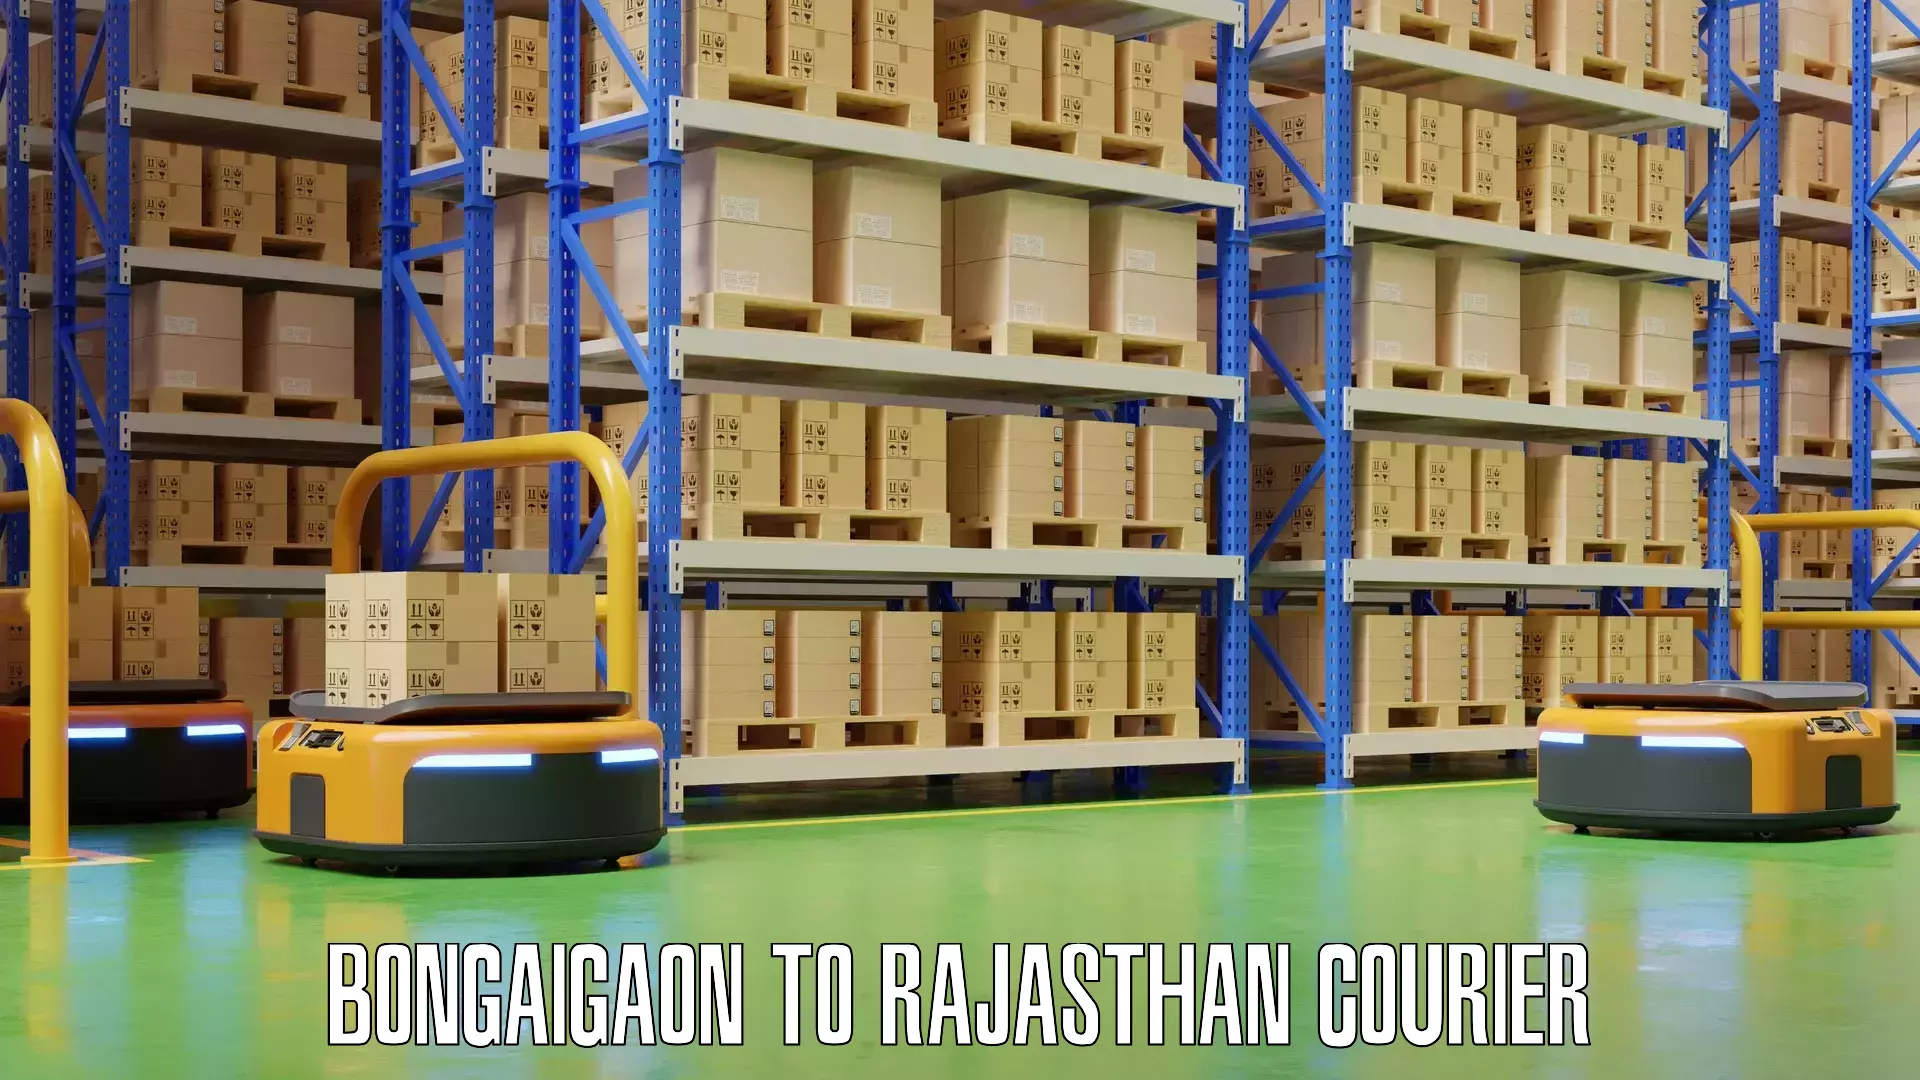 Baggage transport updates Bongaigaon to Rajasthan